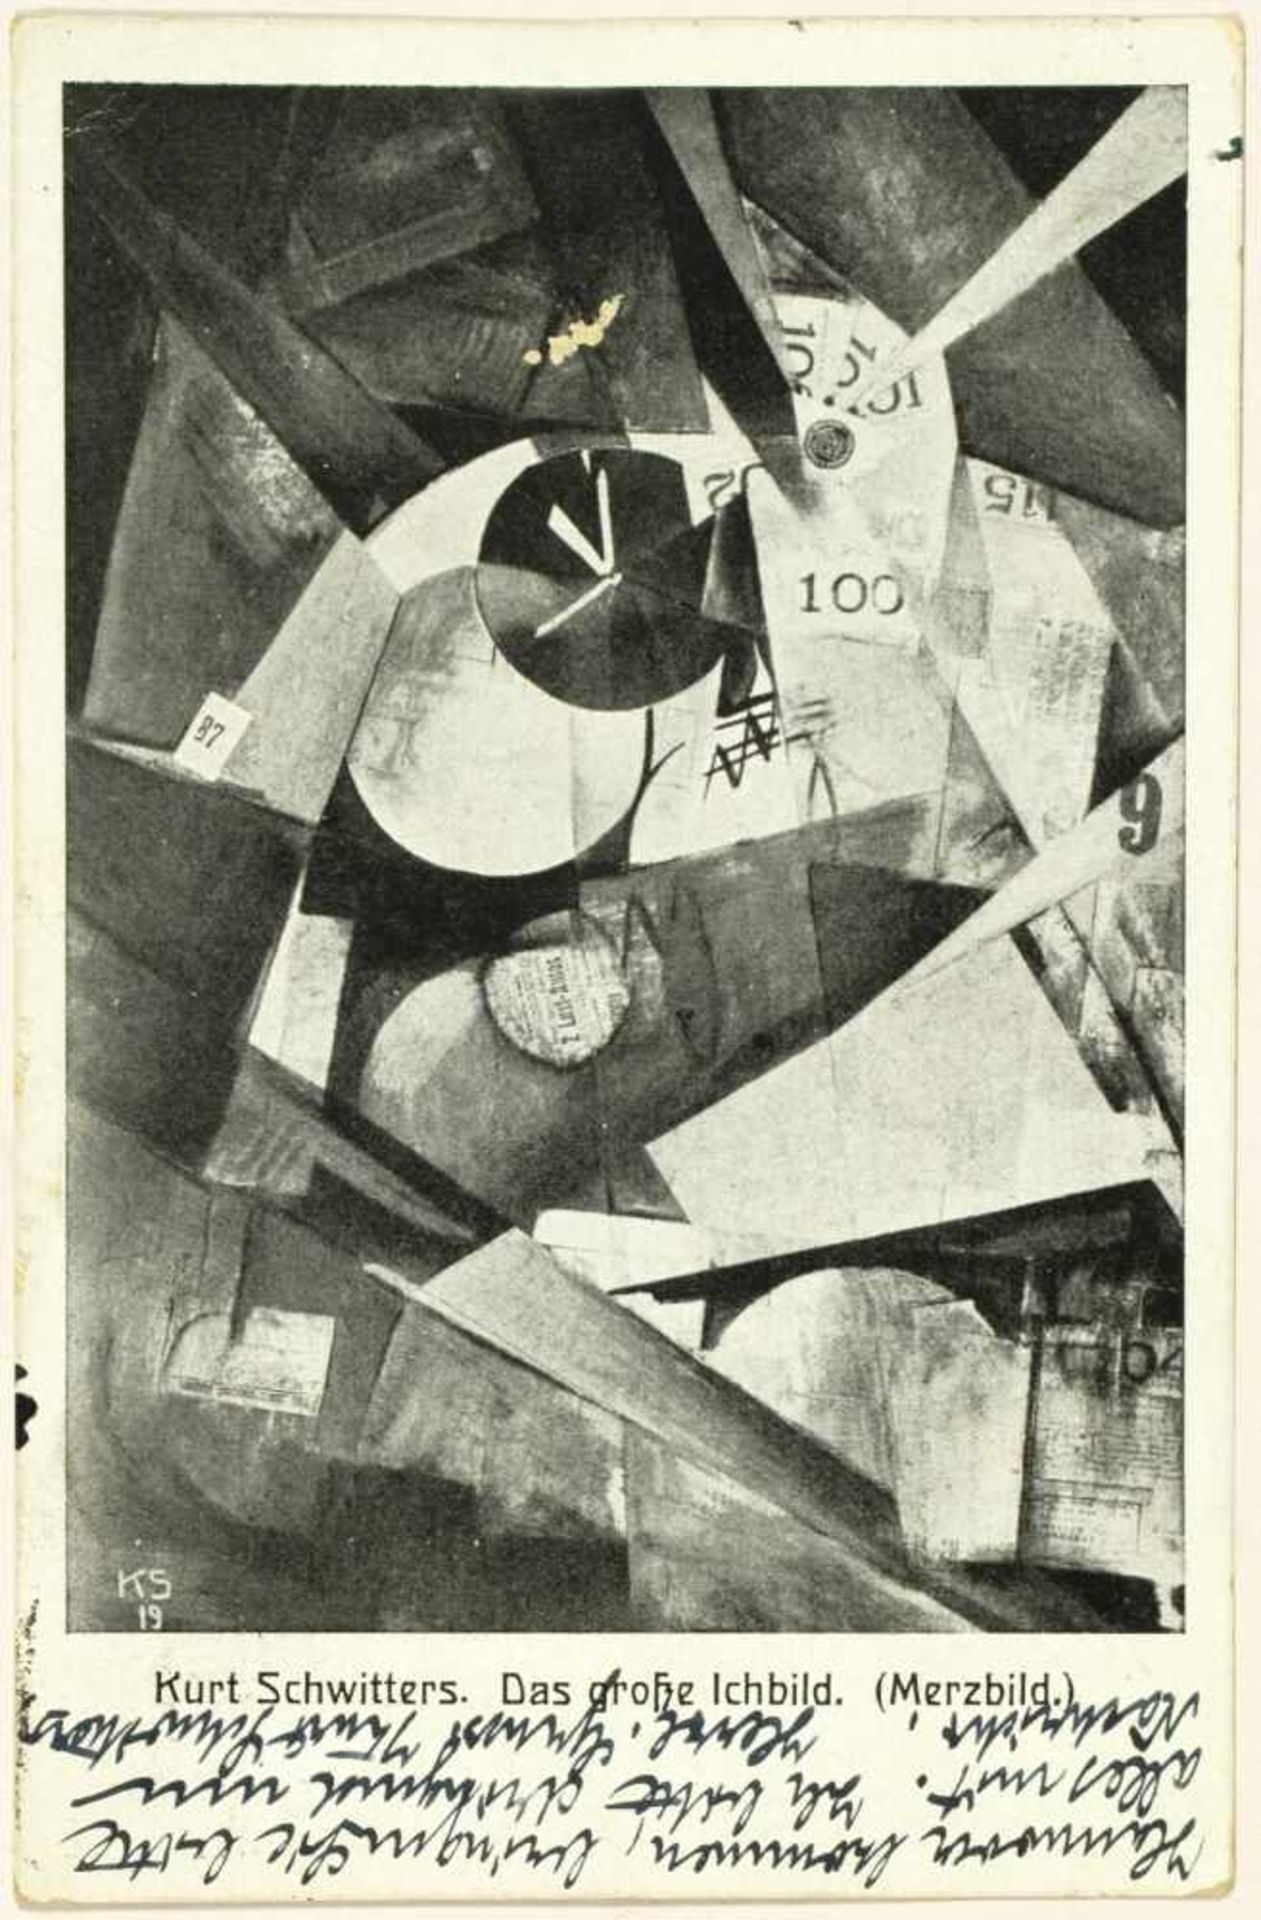 Kurt Schwitters. Eigenhändige Merzbild-Postkarte mit Unterschrift. Hannover, 25. 6. 1924. Beidseitig - Bild 2 aus 2